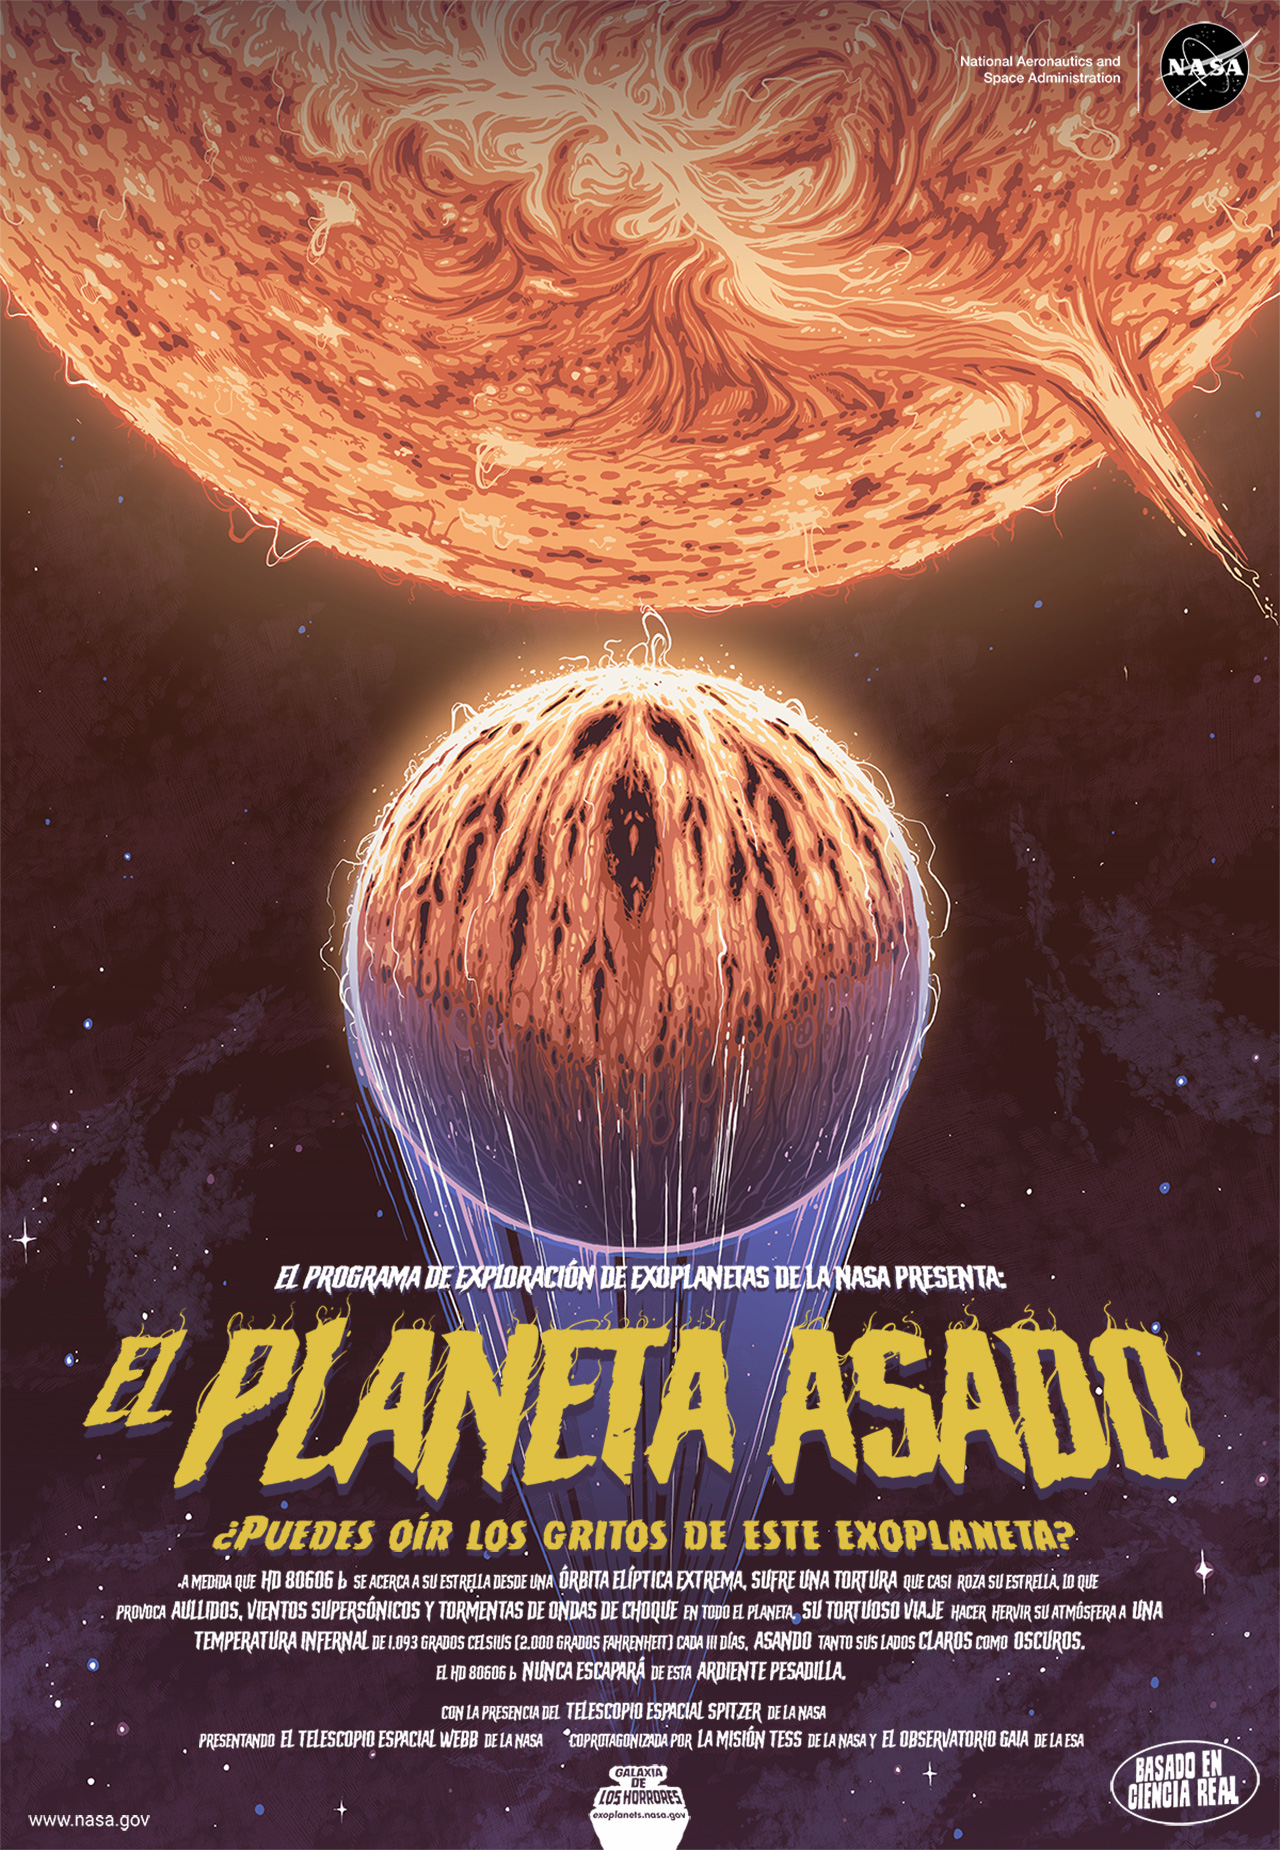 En este póster, un exoplaneta se acerca a su estrella naranja en órbita. Está incómodamente cerca del ardiente resplandor. Su atmósfera brilla y se quema, provocando un tortuoso viaje alrededor de la estrella.